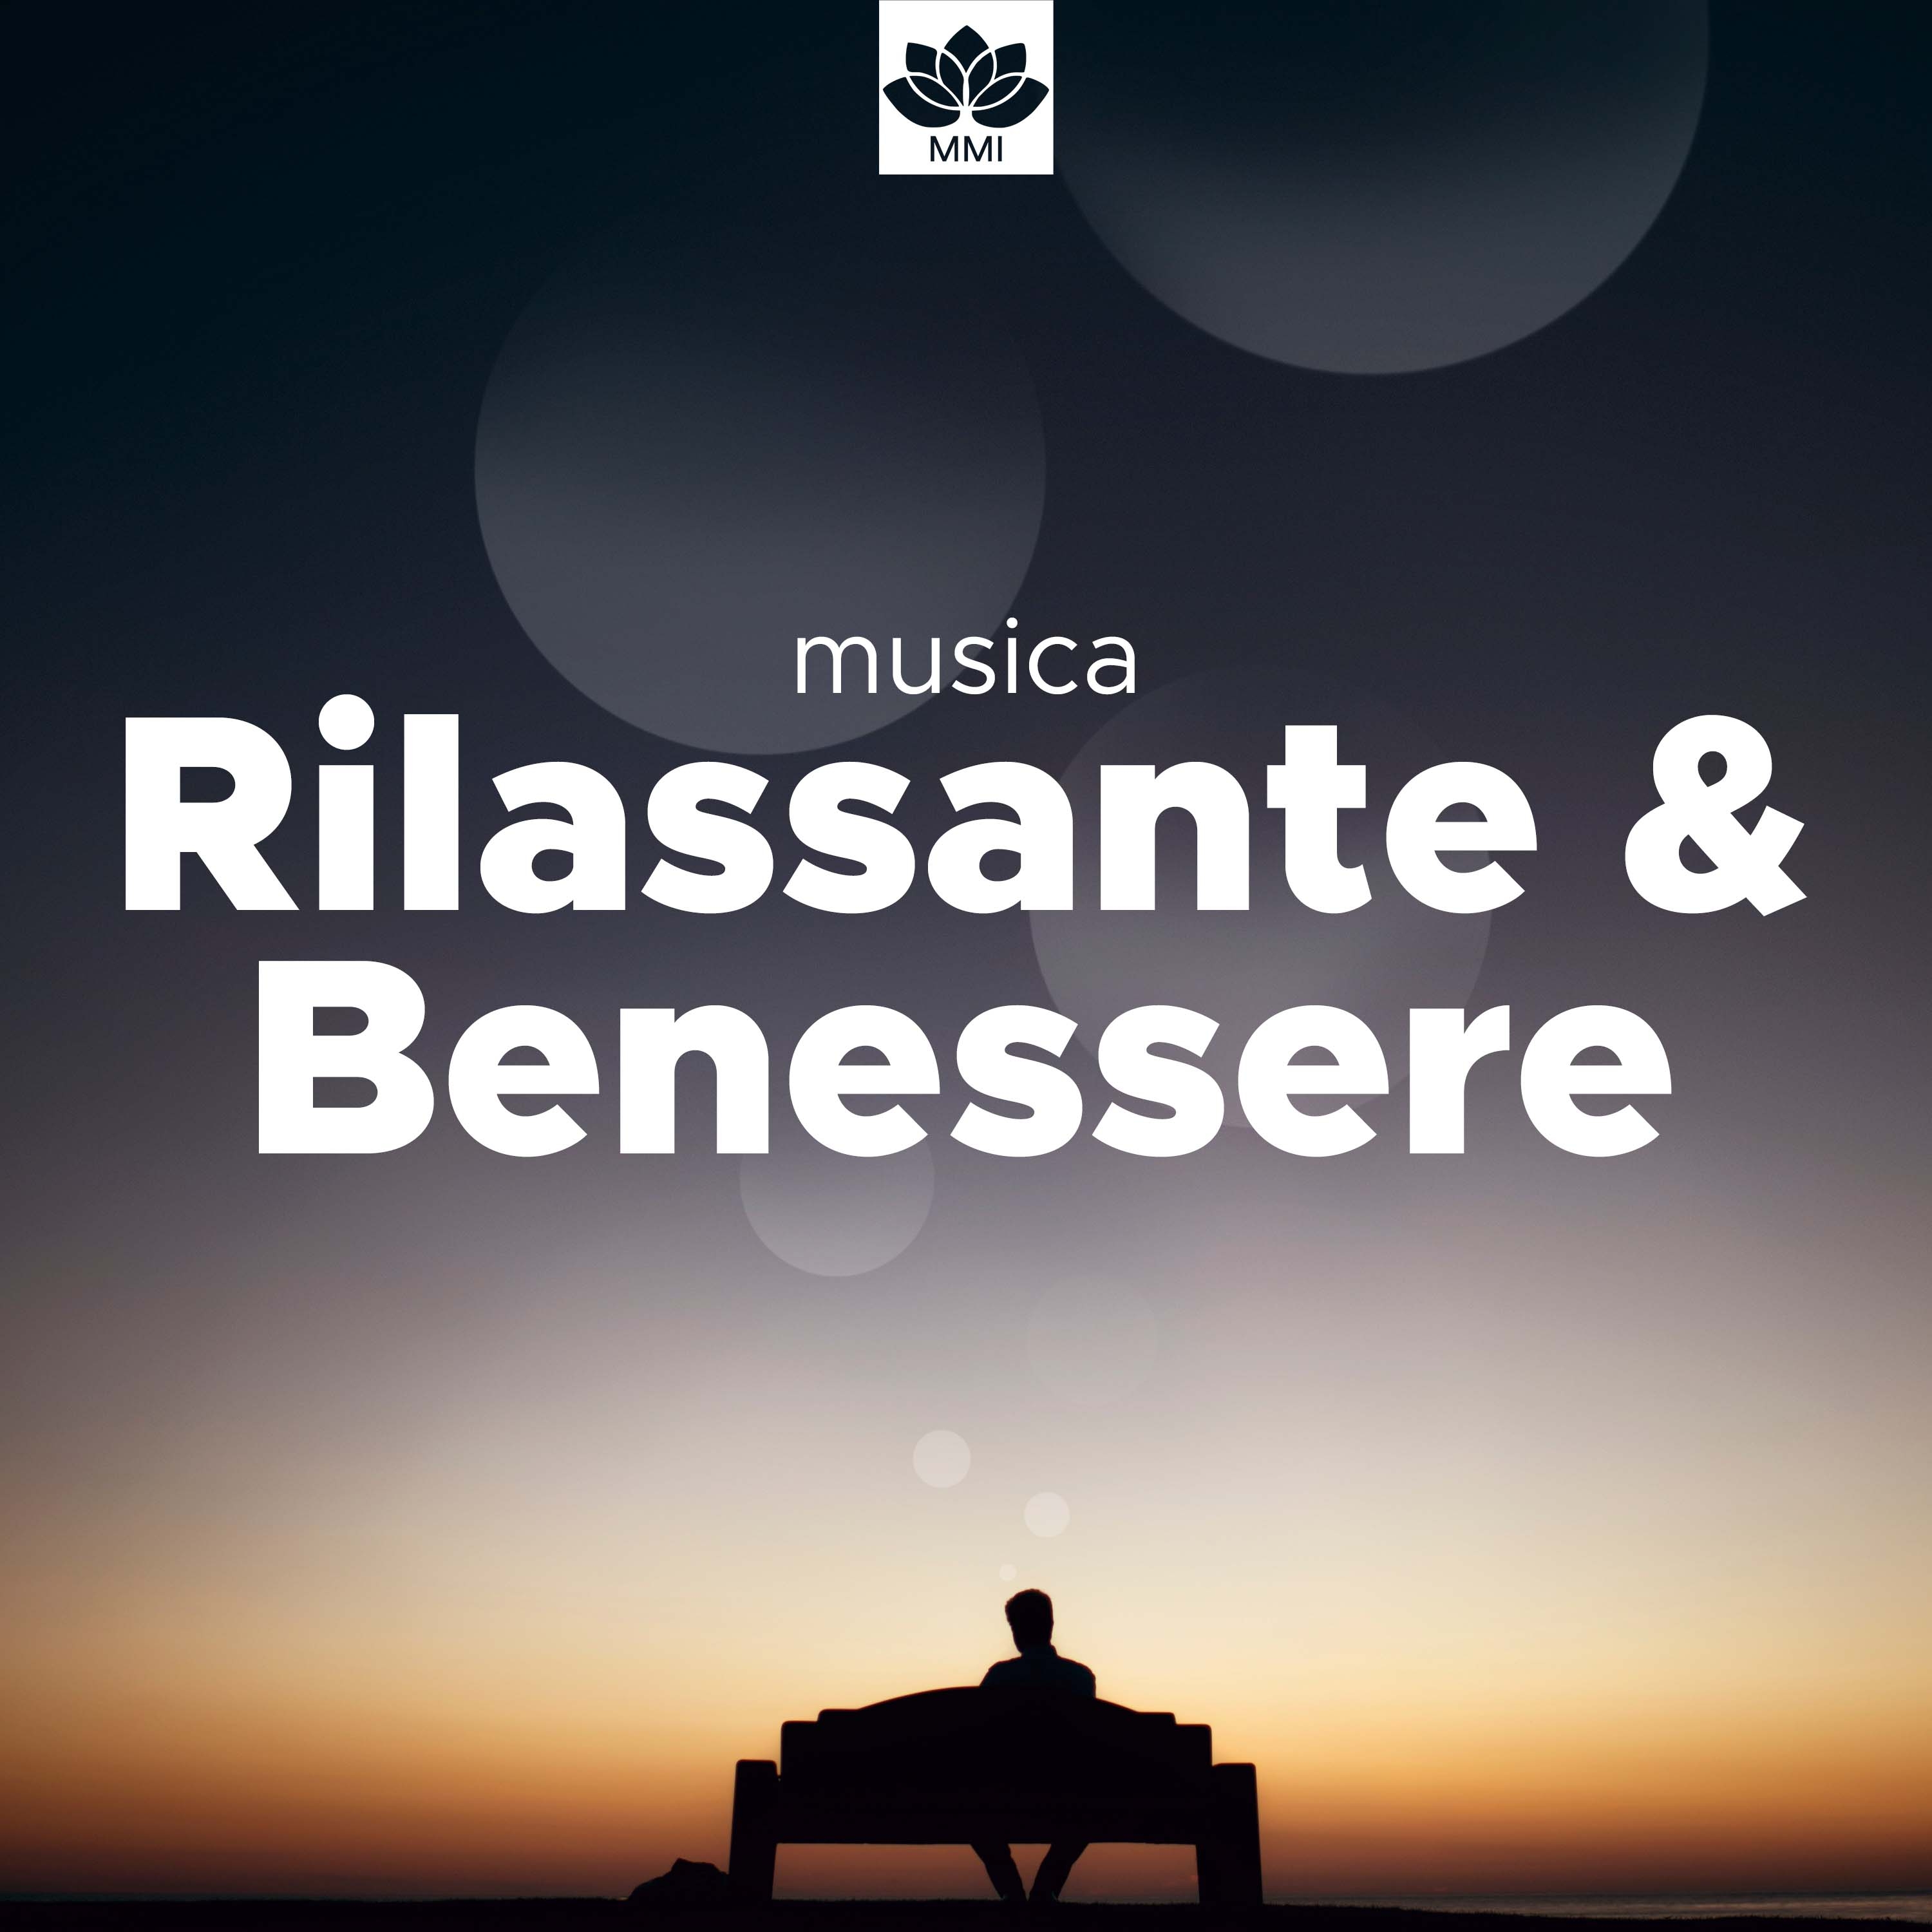 Musica Rilassante & Benessere